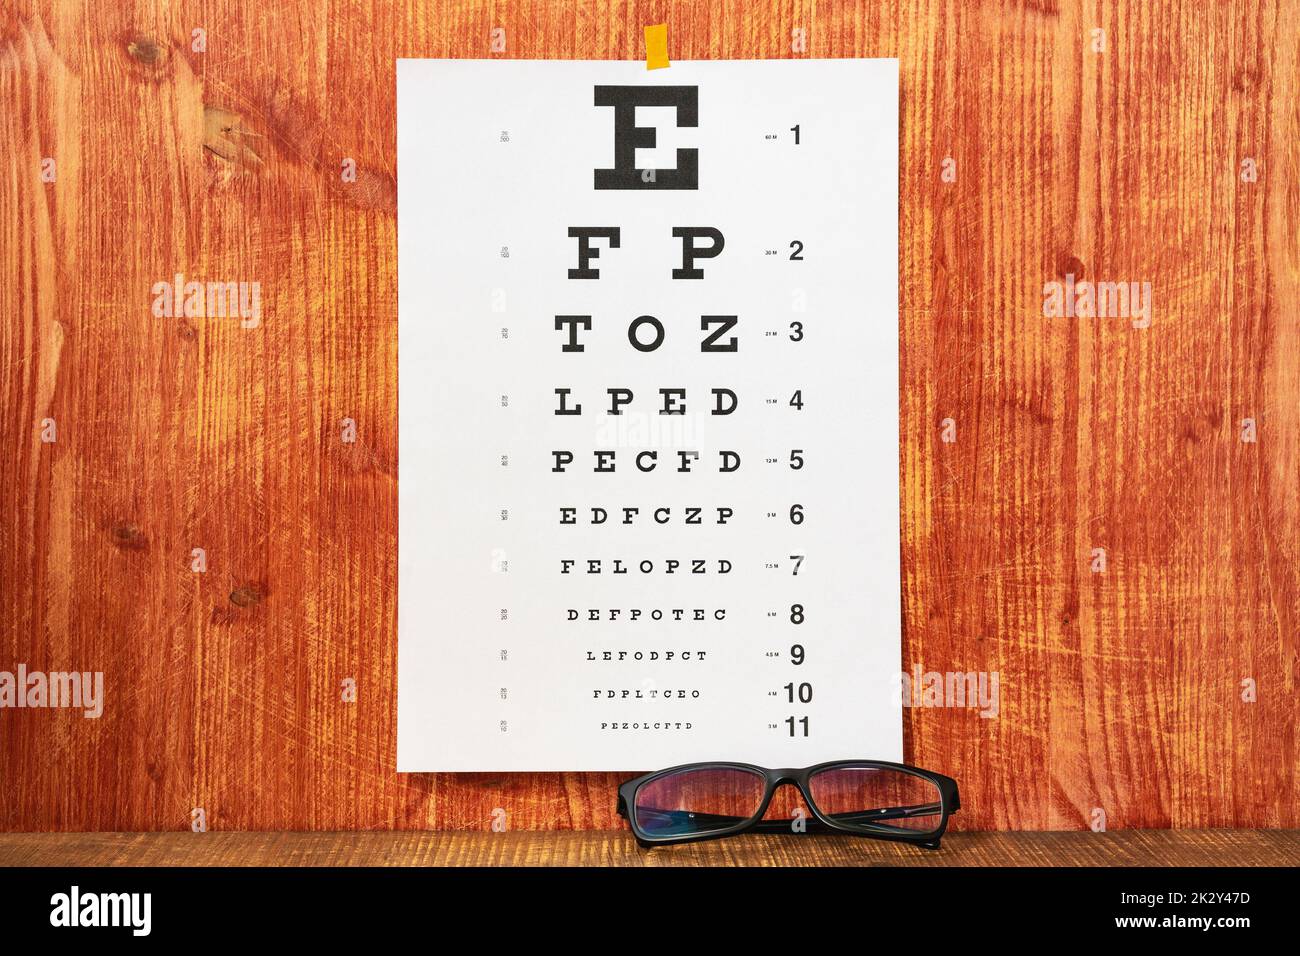 Eyesight Eye Care Stock Photo